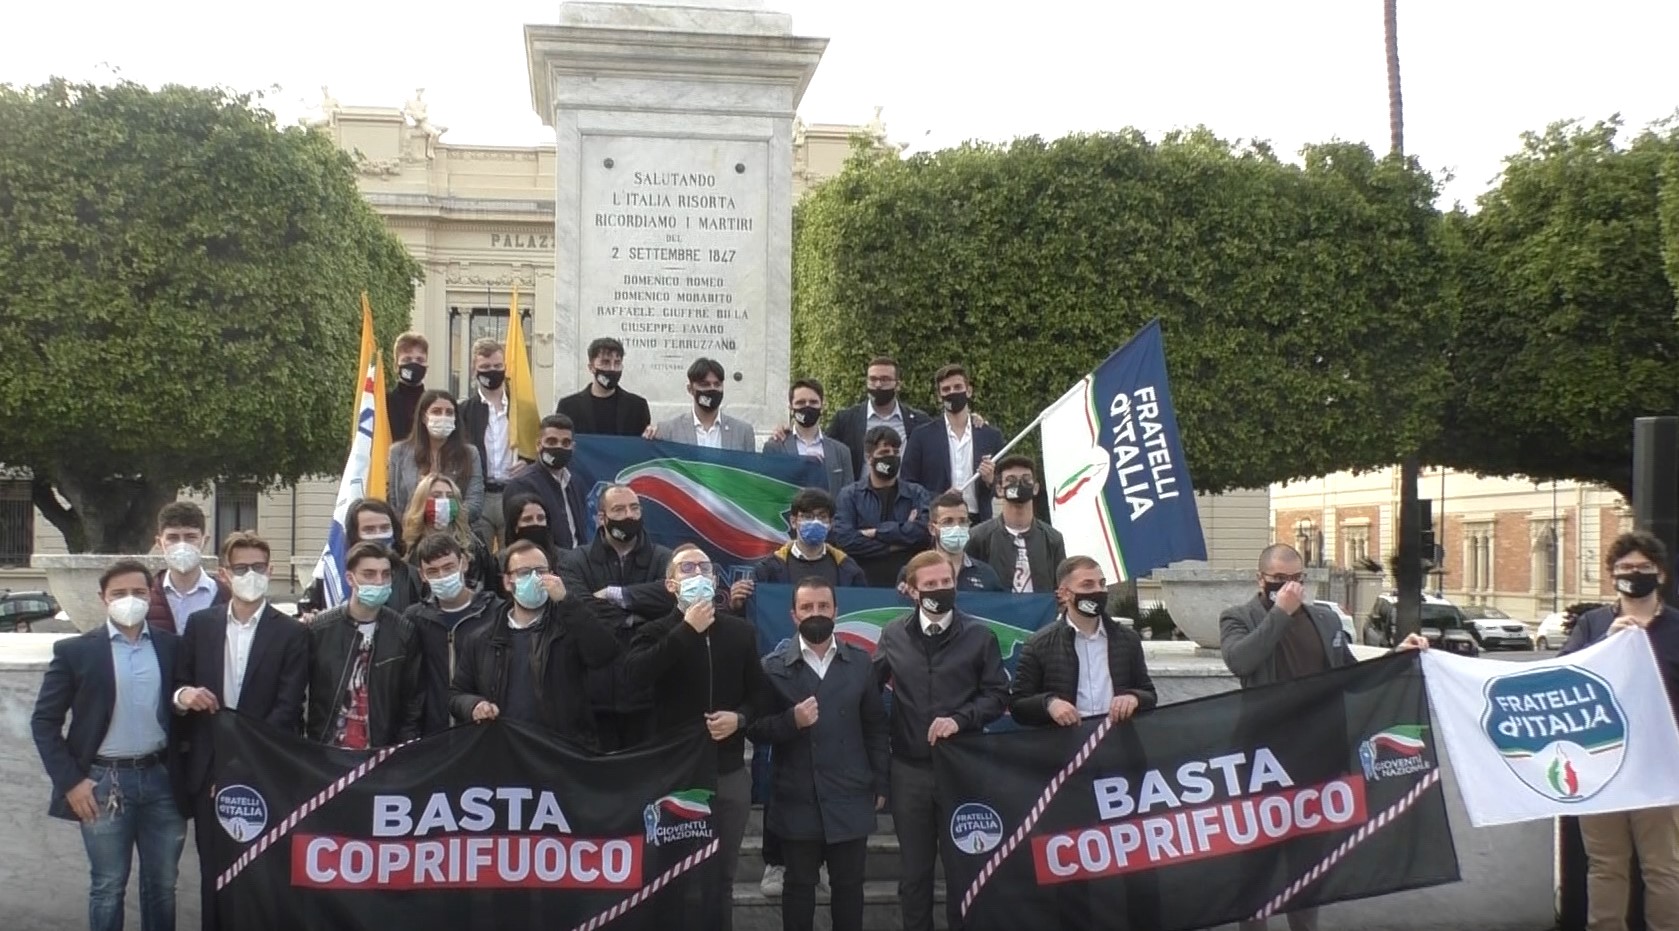 Basta coprifuoco, a Reggio Fratelli d’Italia e Gioventù Nazionale protestano in piazza